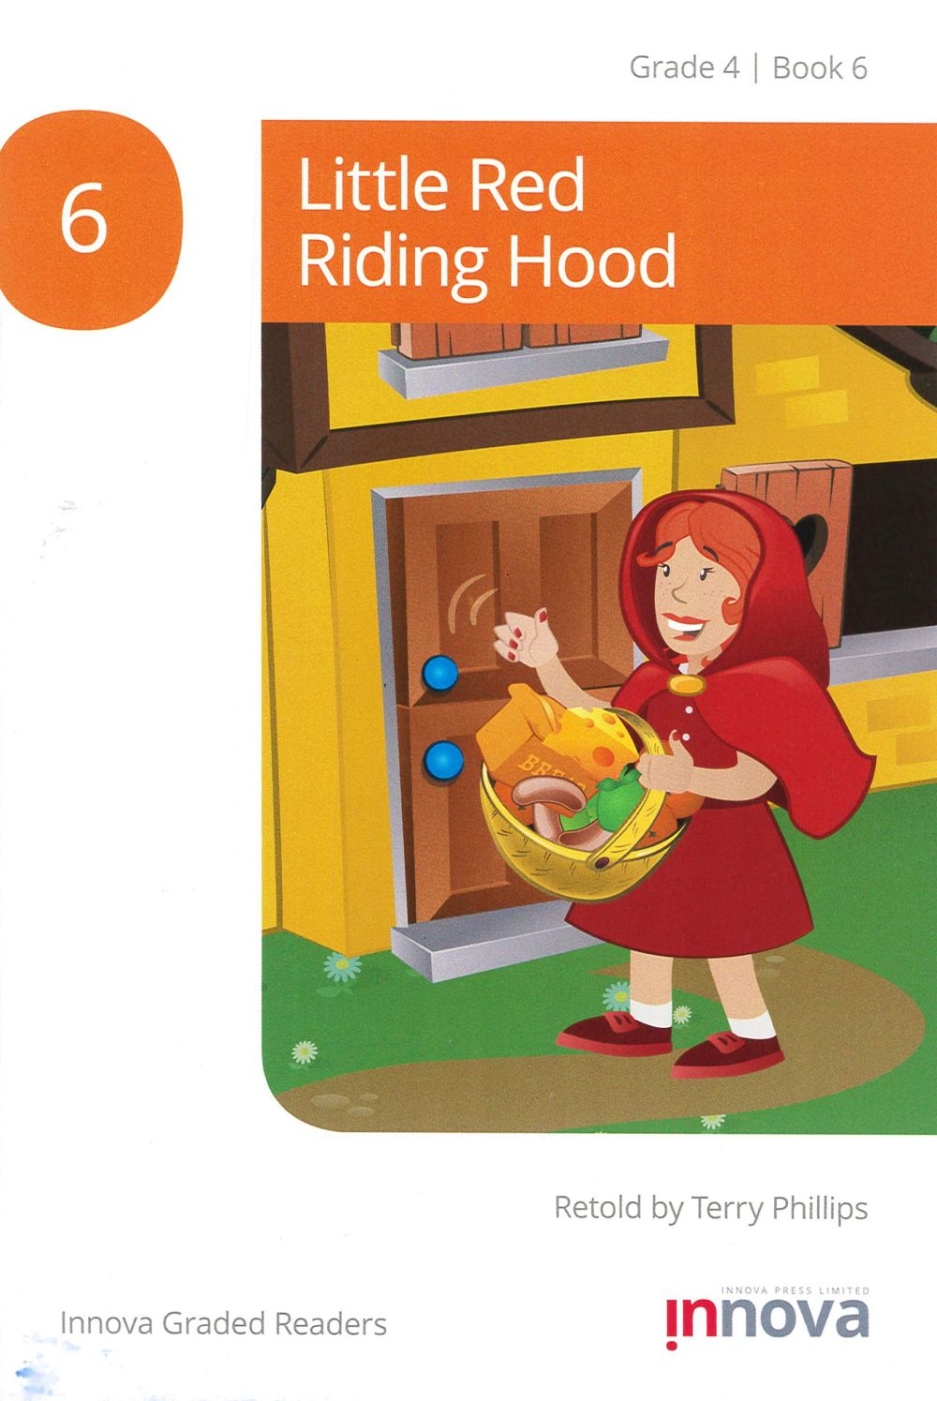 Innova Graded Readers Grade 4 (Book 6) :Little Red Riding Hood